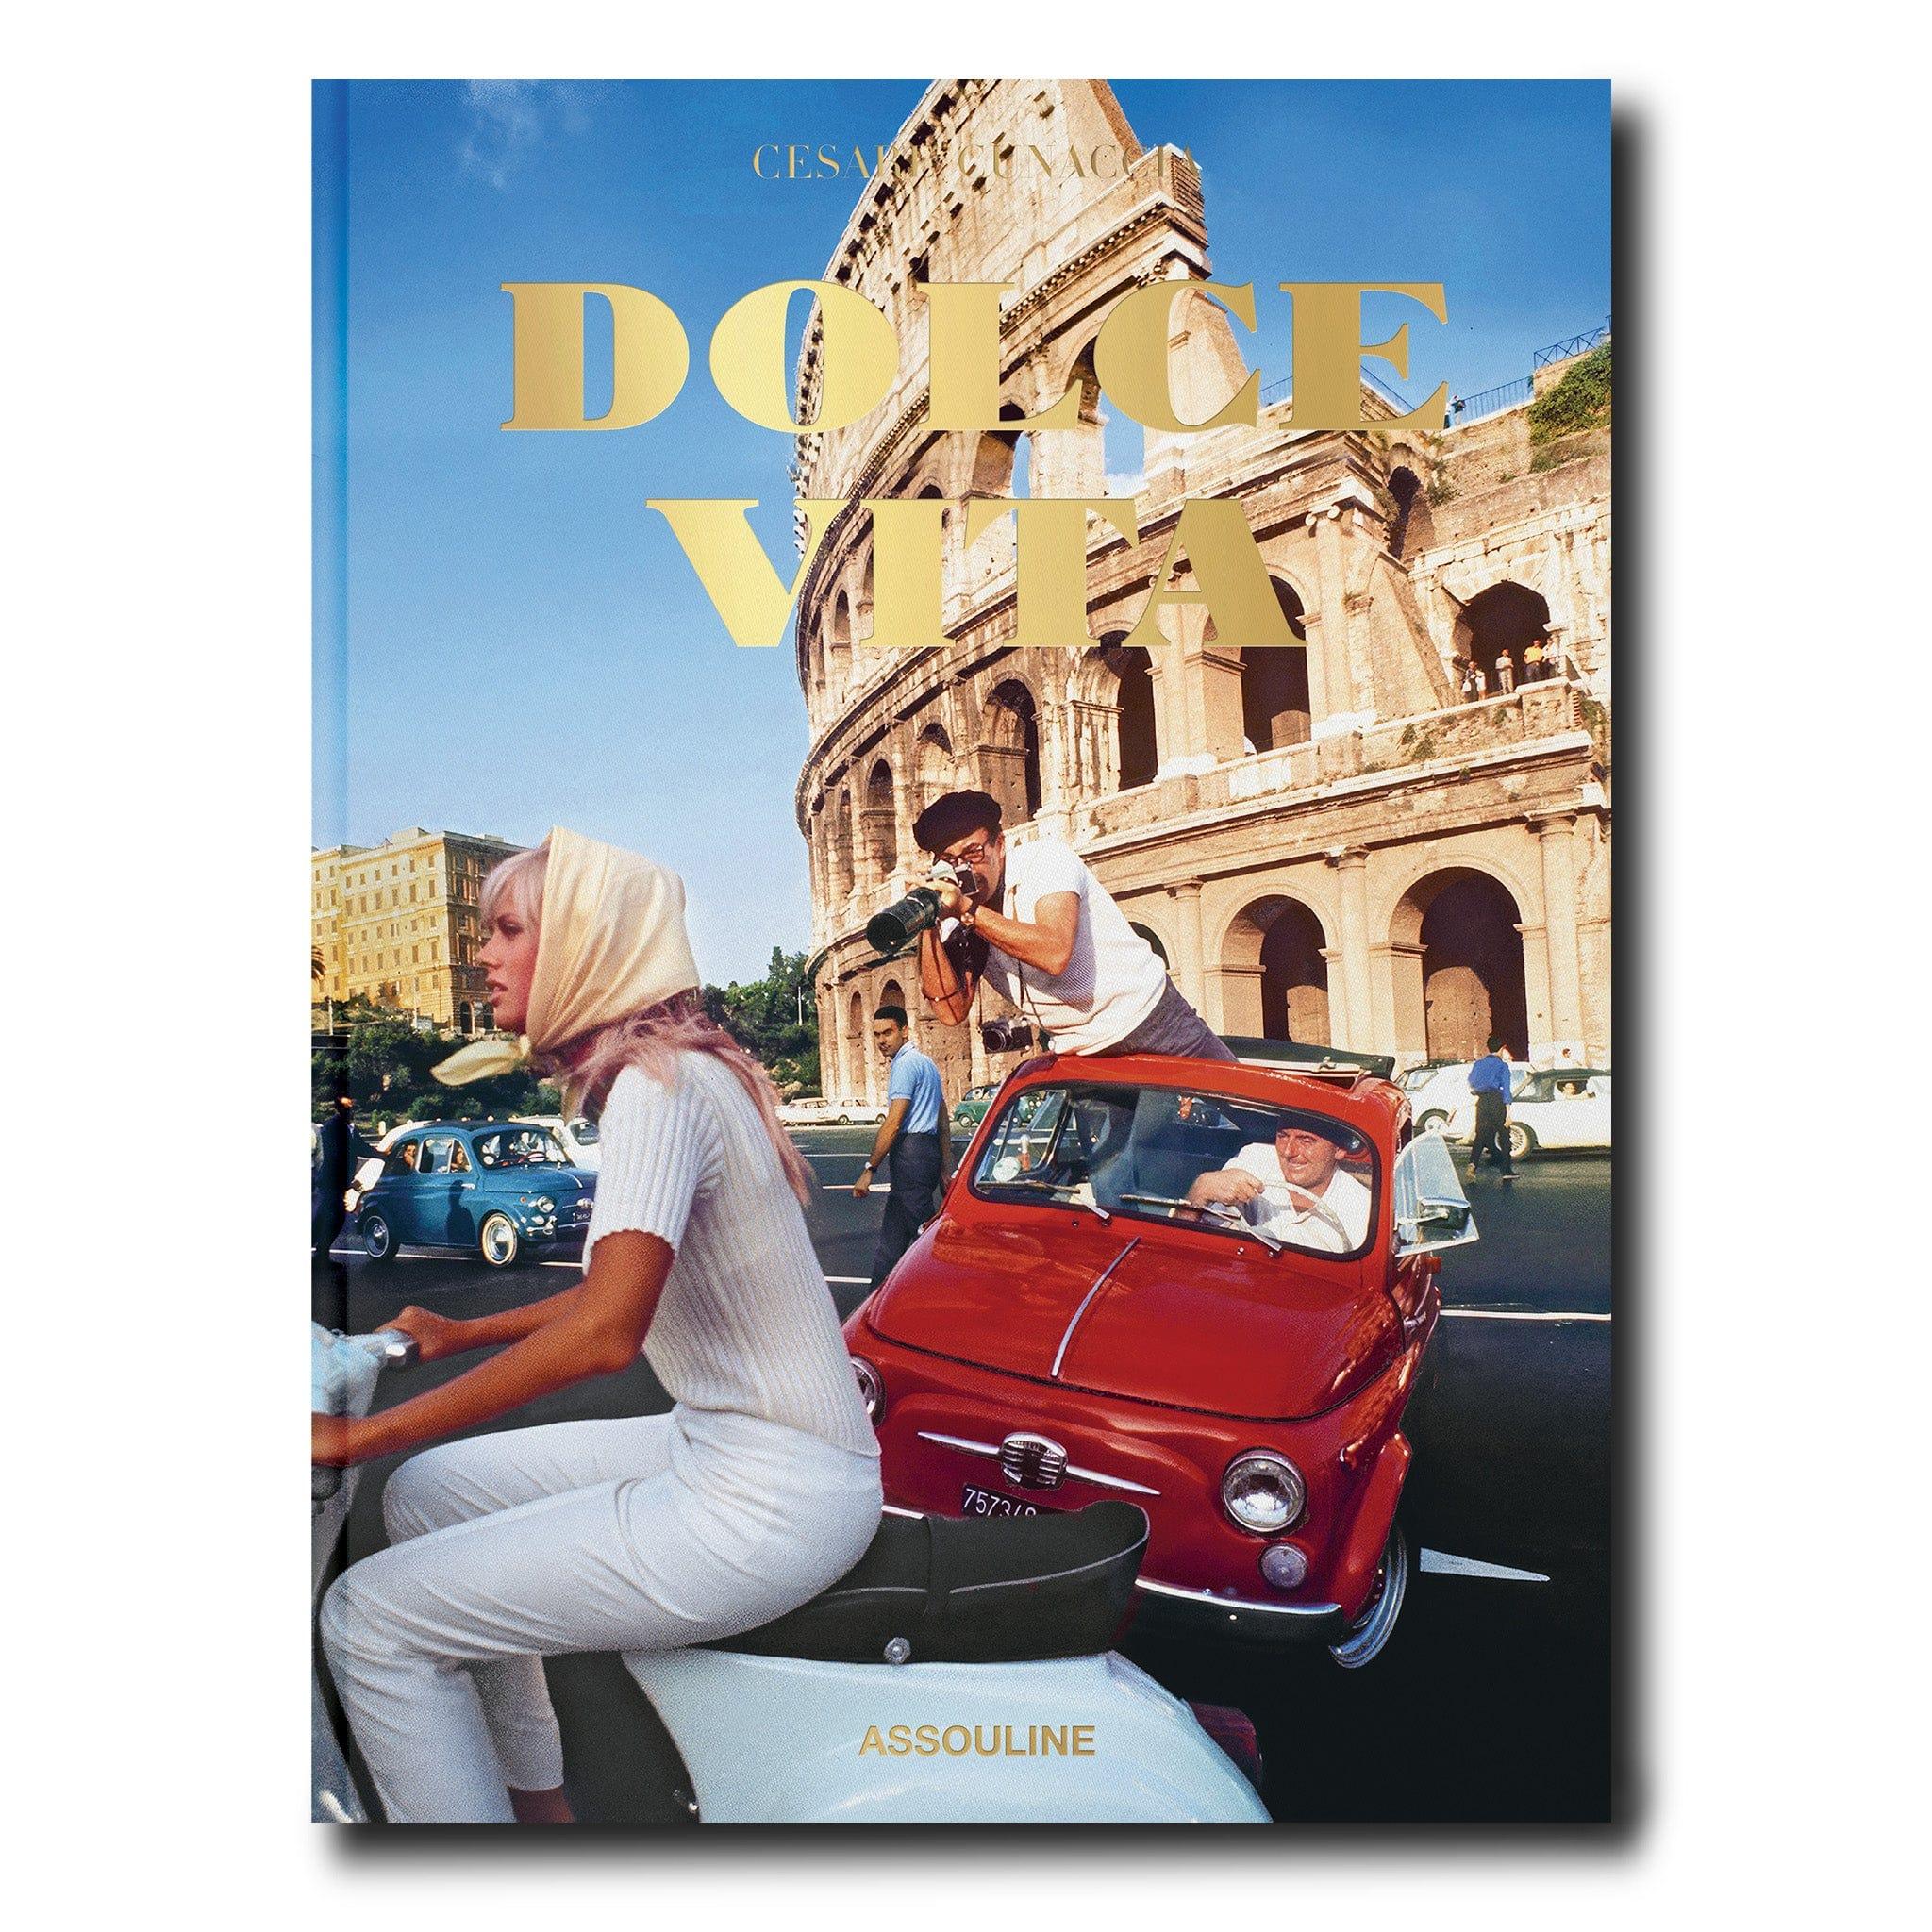 Erleben Sie den Lebensstil des Dolce Vita - eine Mischung aus Schönheit, Stil und Charme, inspiriert von Federico Fellinis kultigem Film von 1960. Diese italienische Lebensart überdauert die Zeit und prägt Italien noch heute. Tauchen Sie ein in die